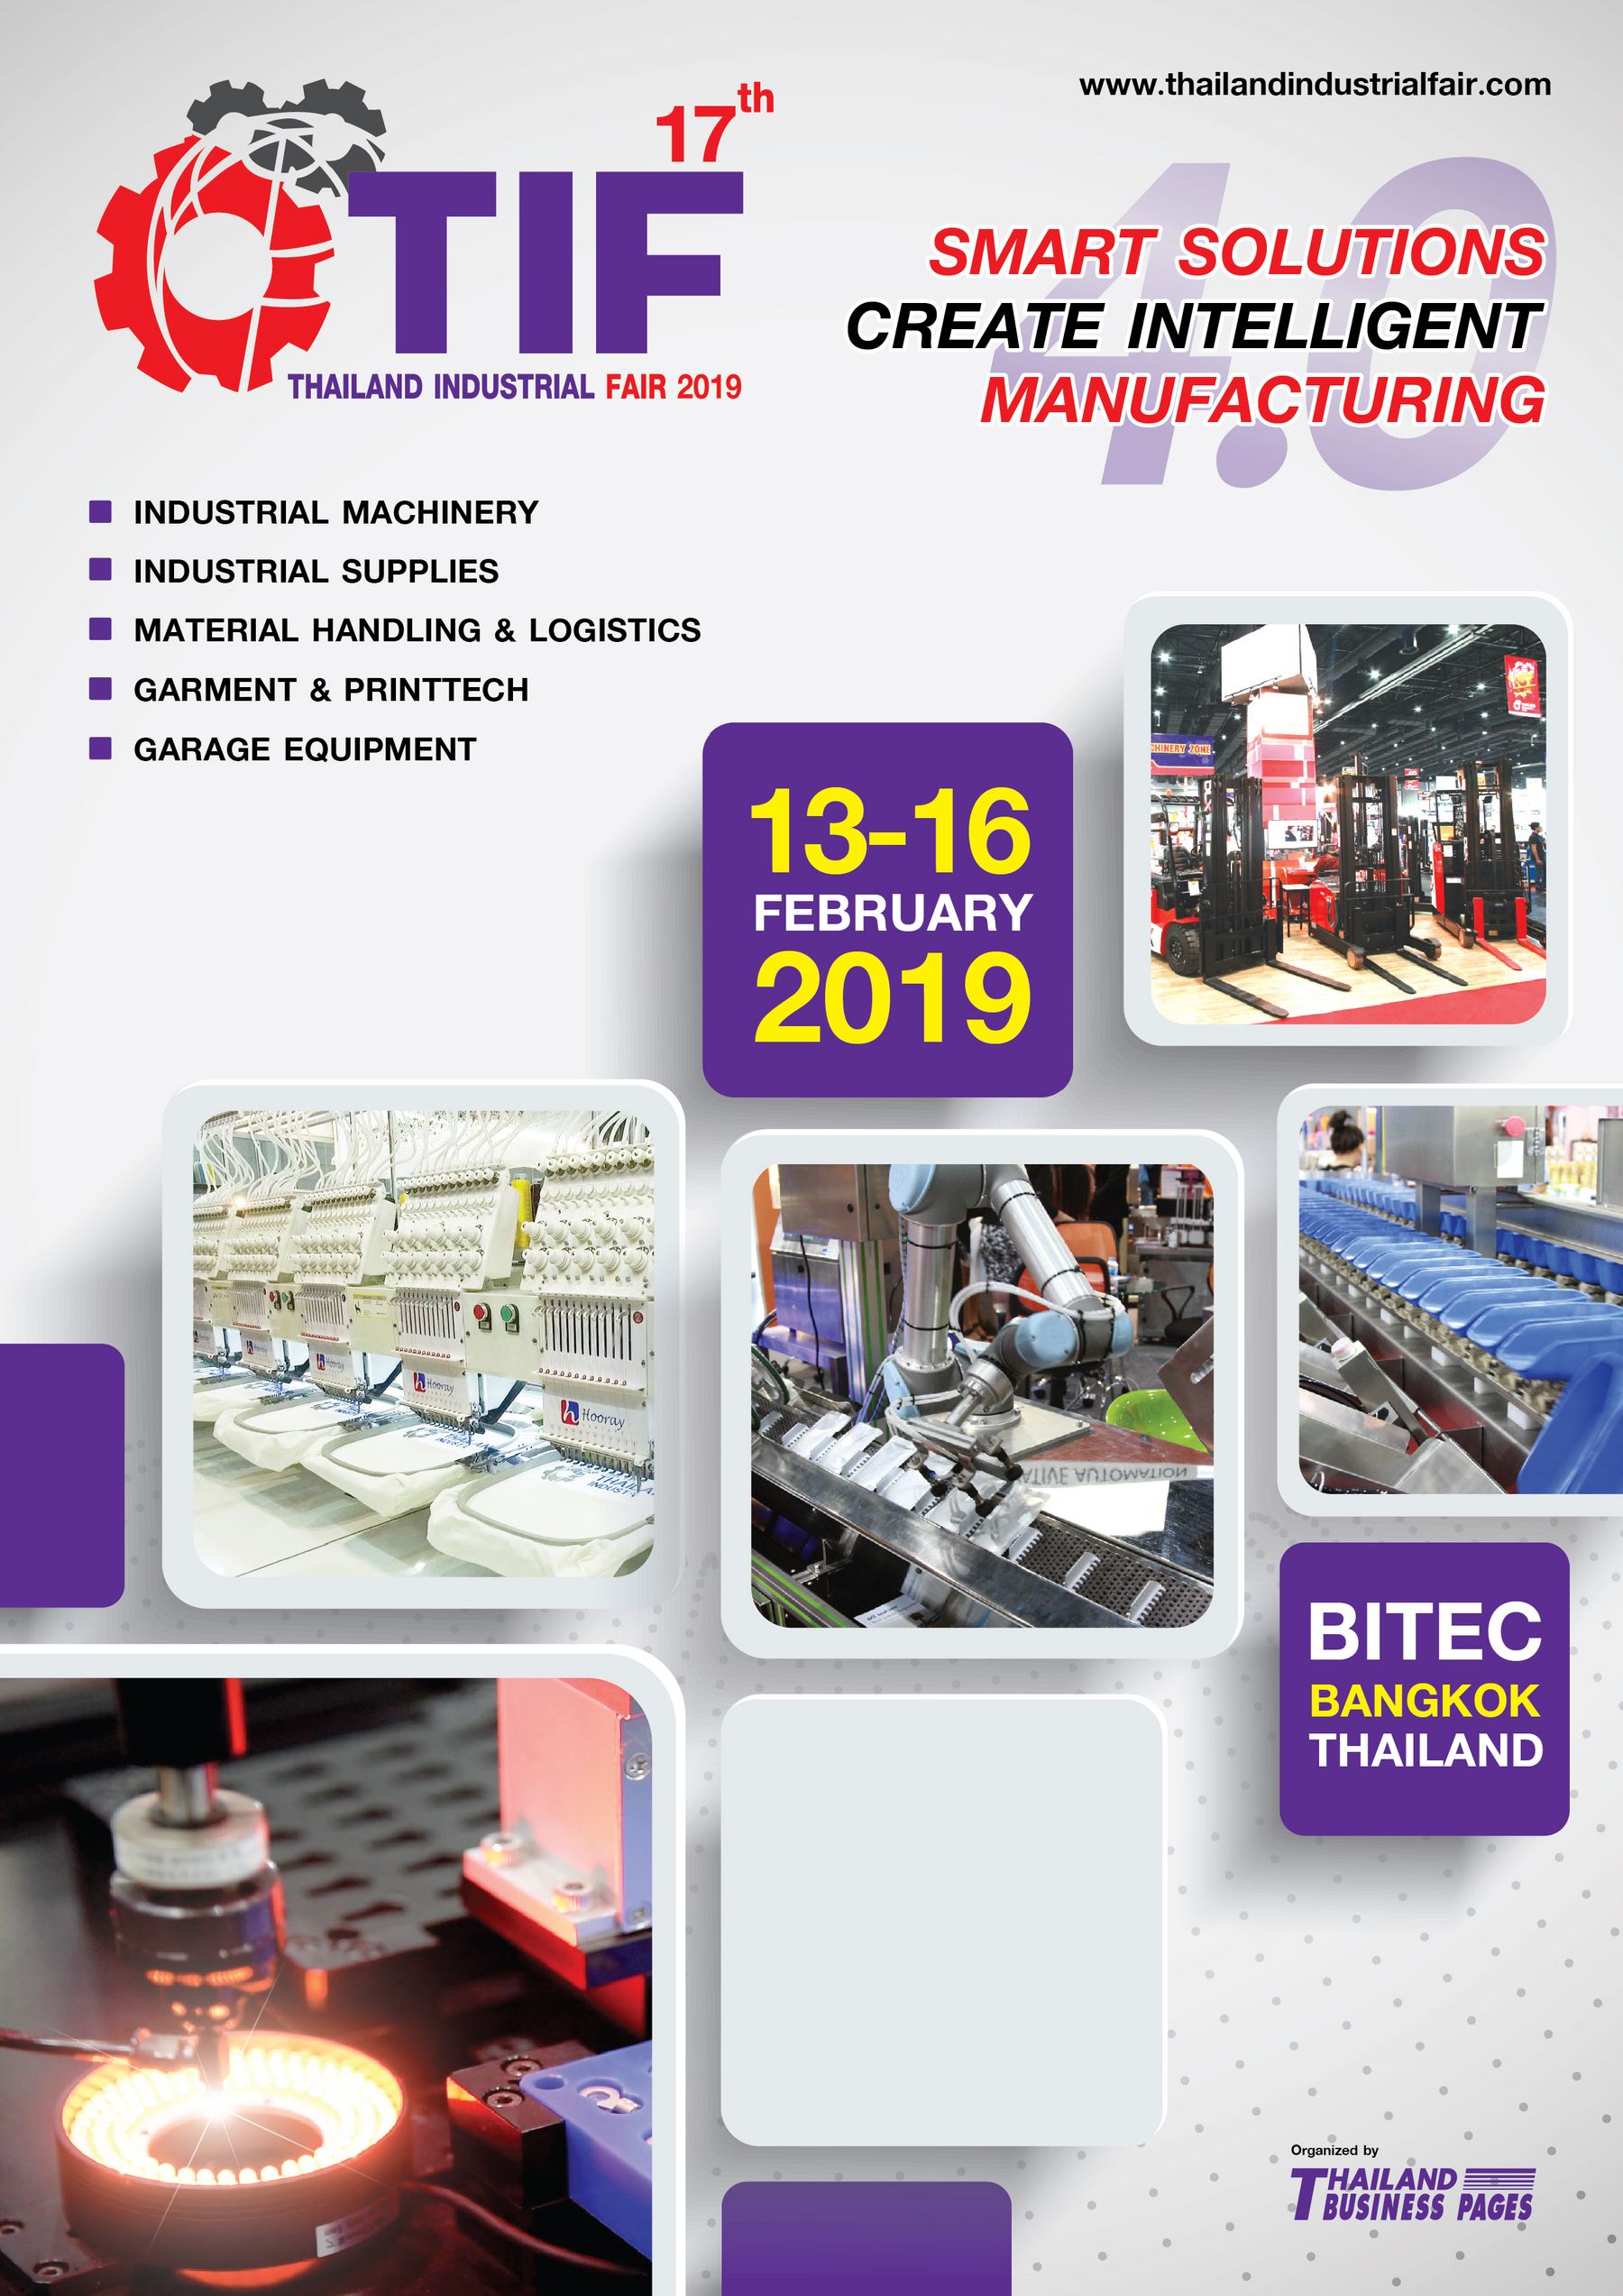 Thailand Industrial Fair 2019